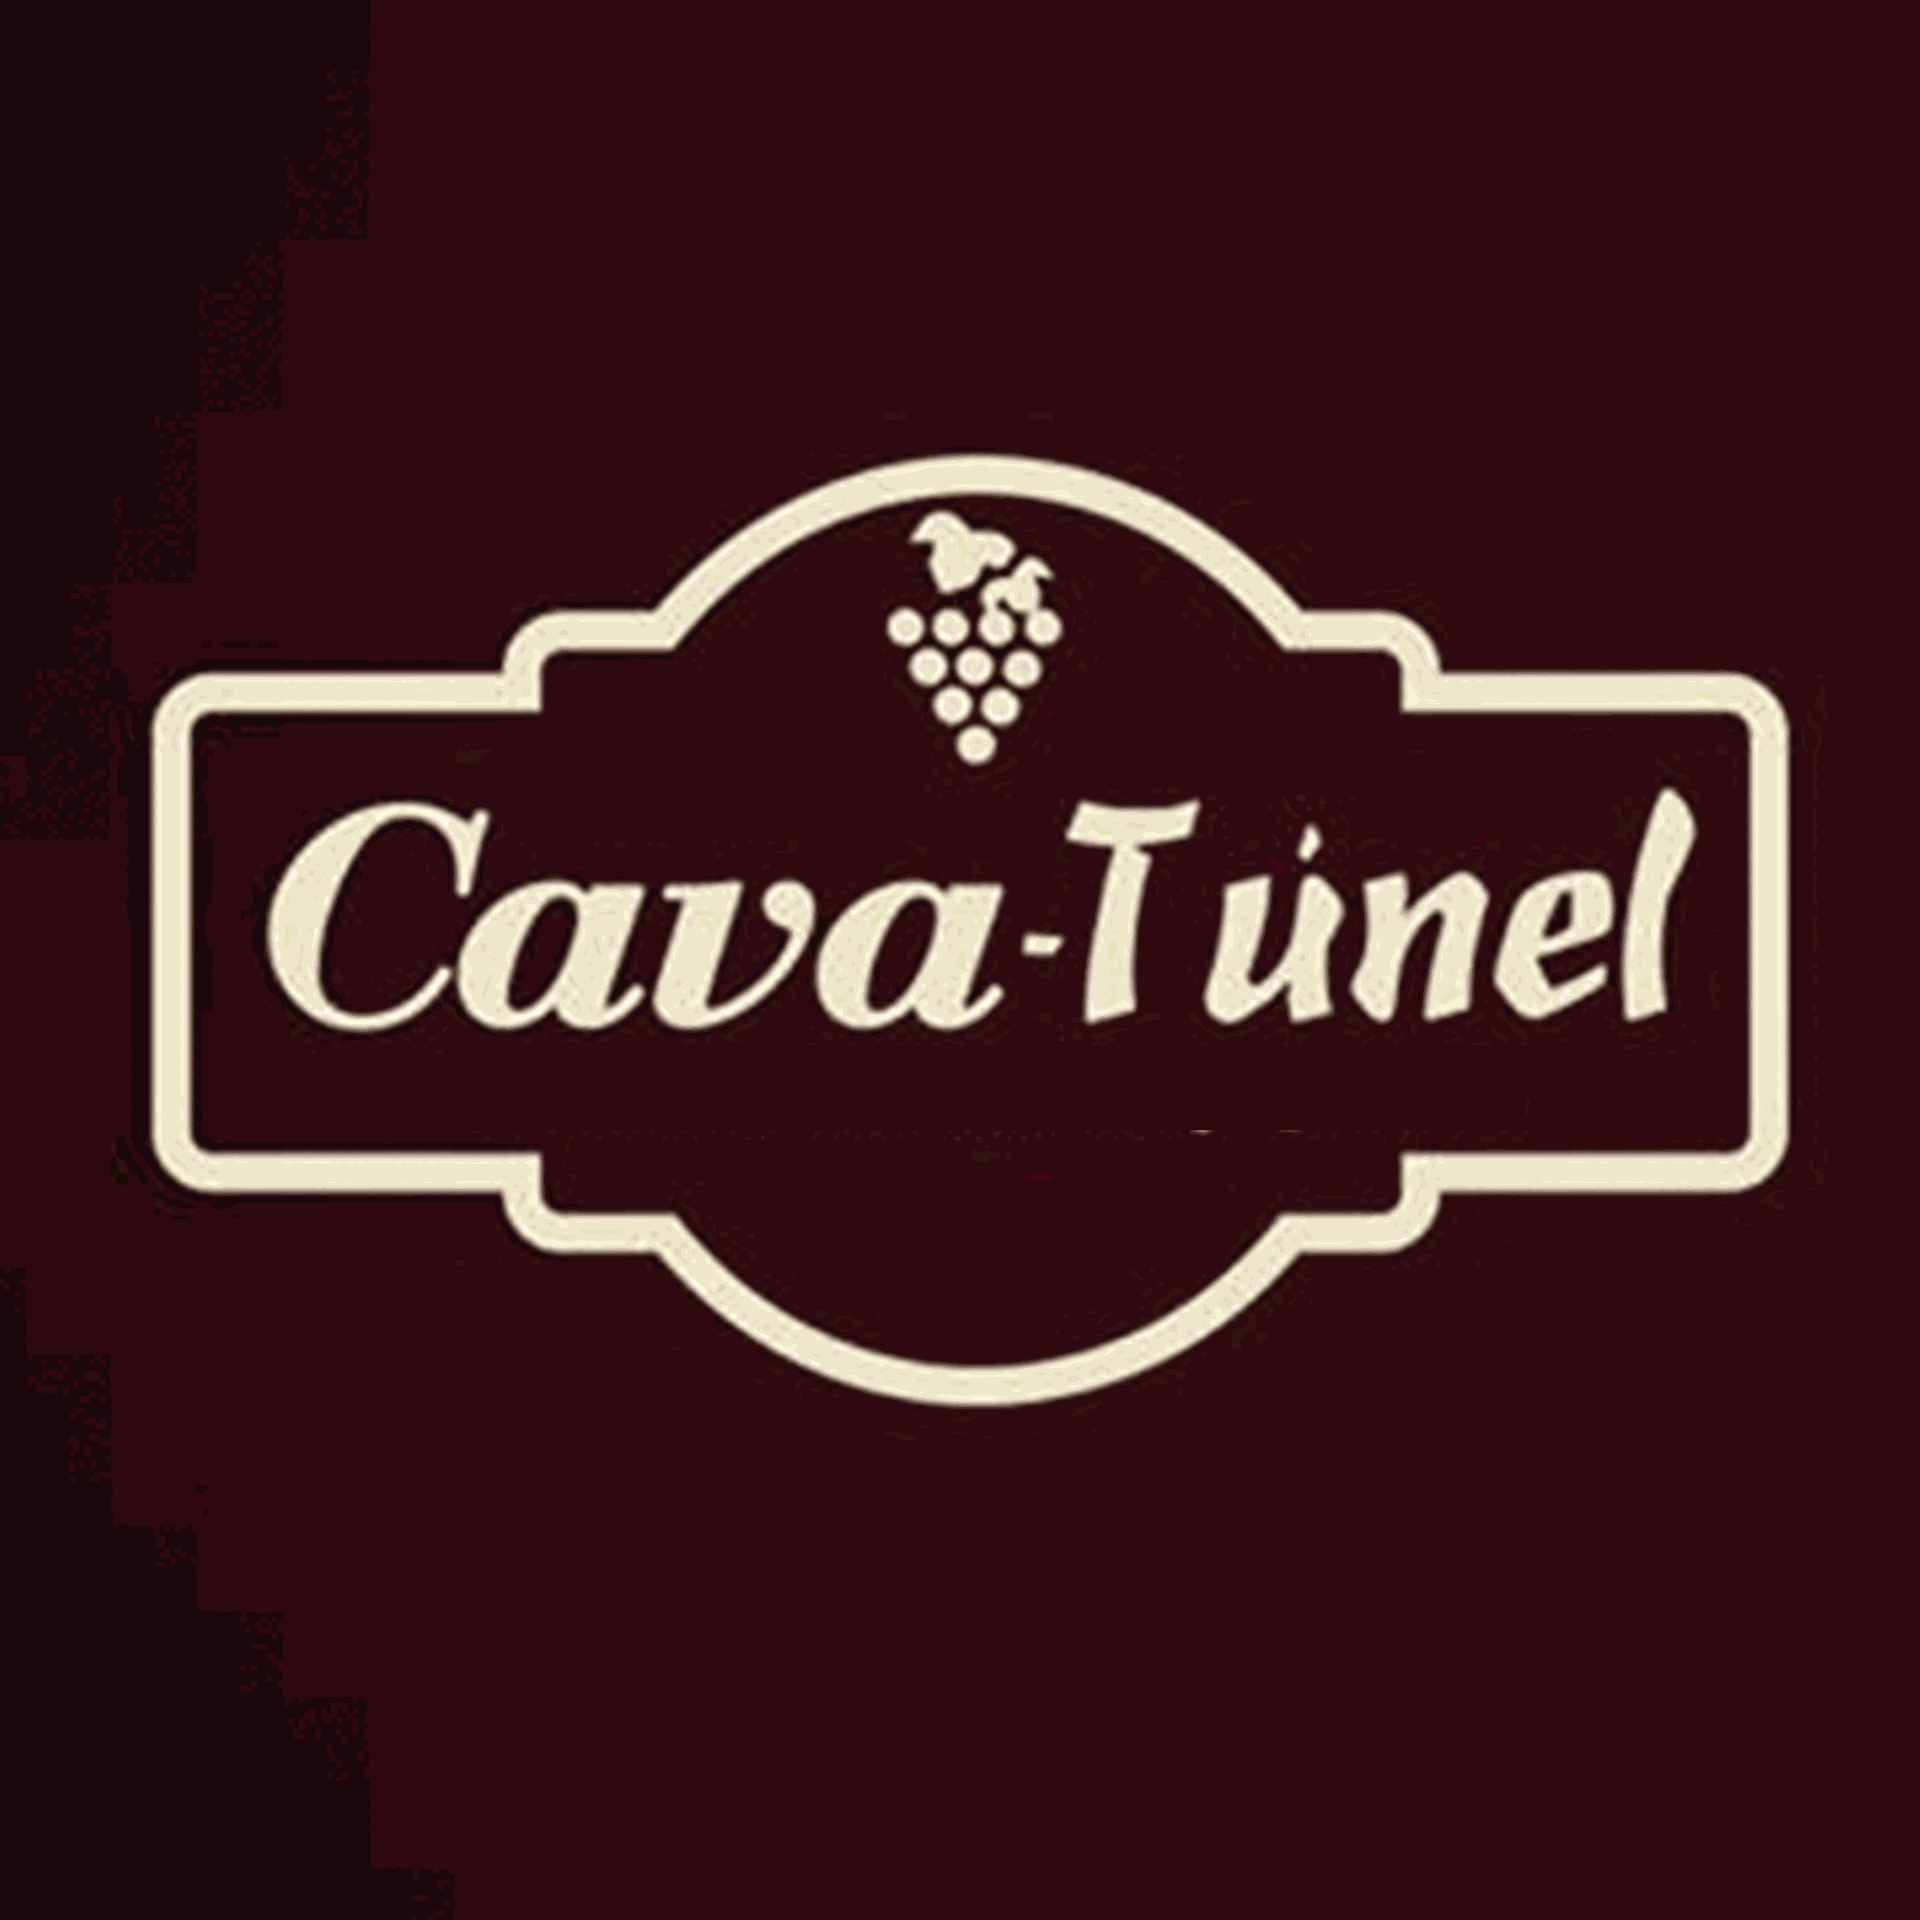 CAVA TUNEL